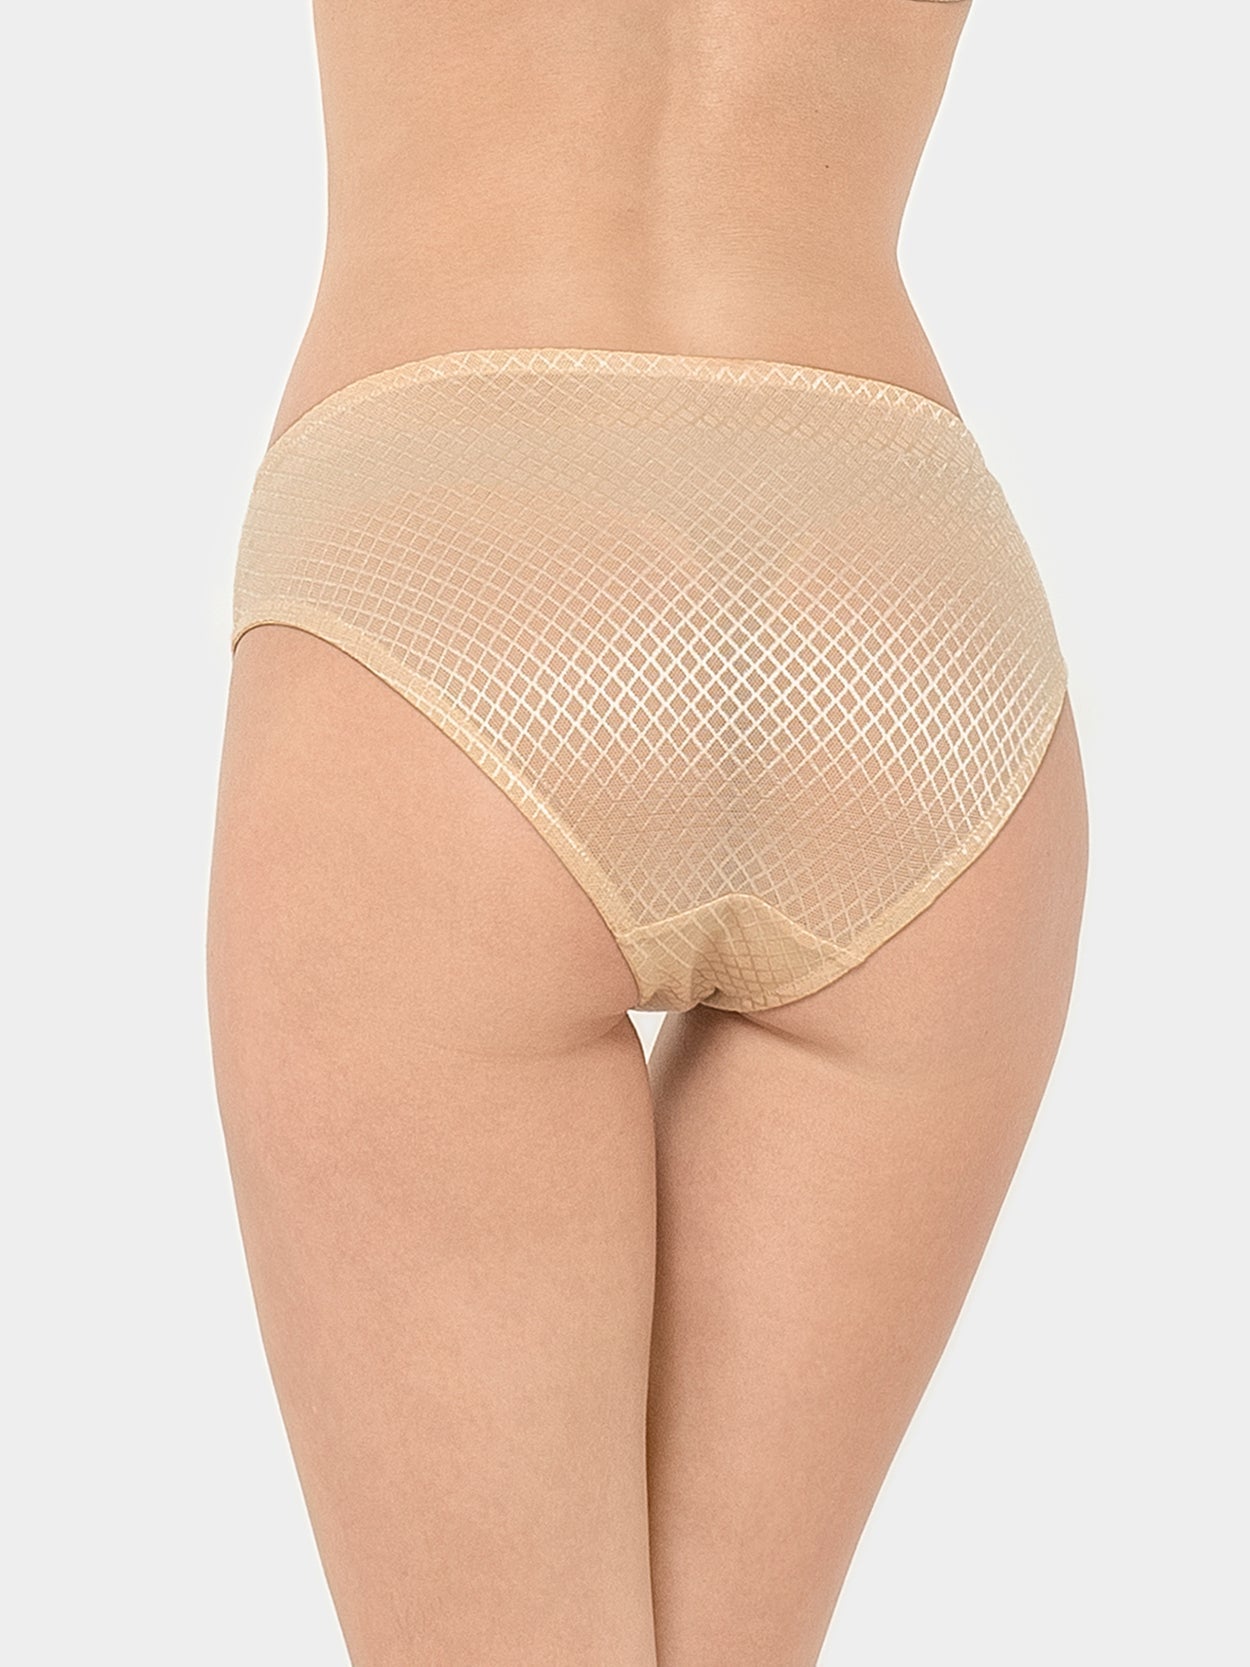 Cotton Lace Mesh Plus Size Panties 4 PCS Nude